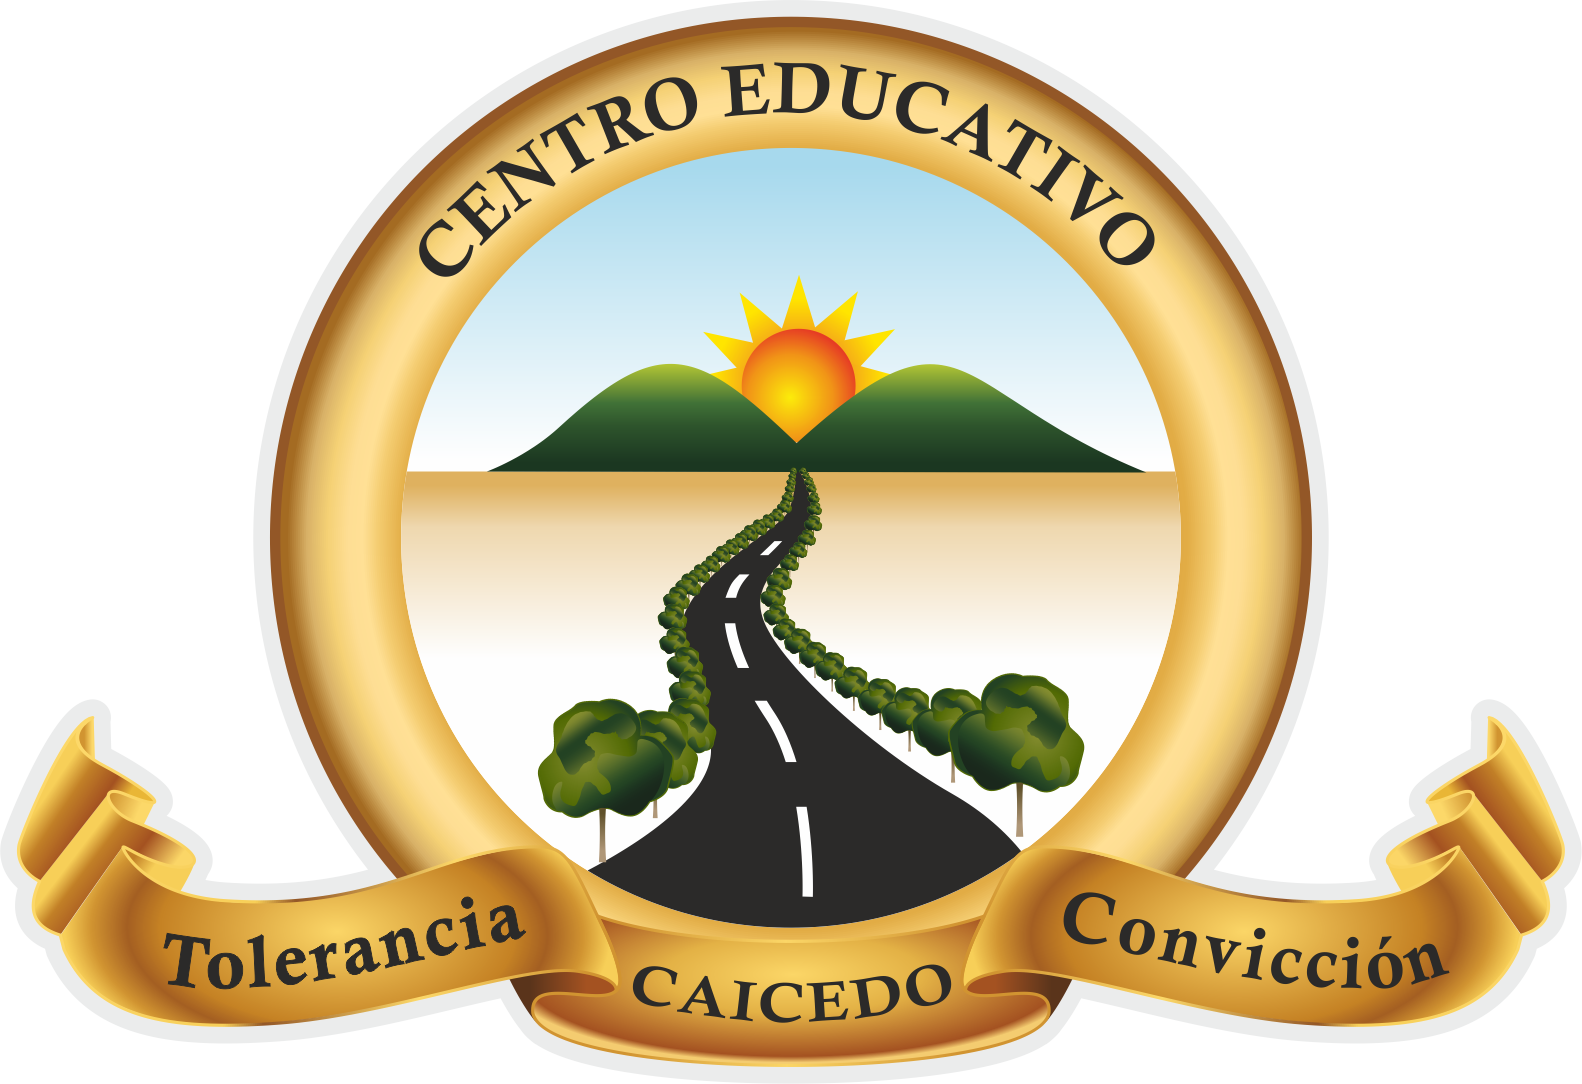 Centro Educativo Caicedo